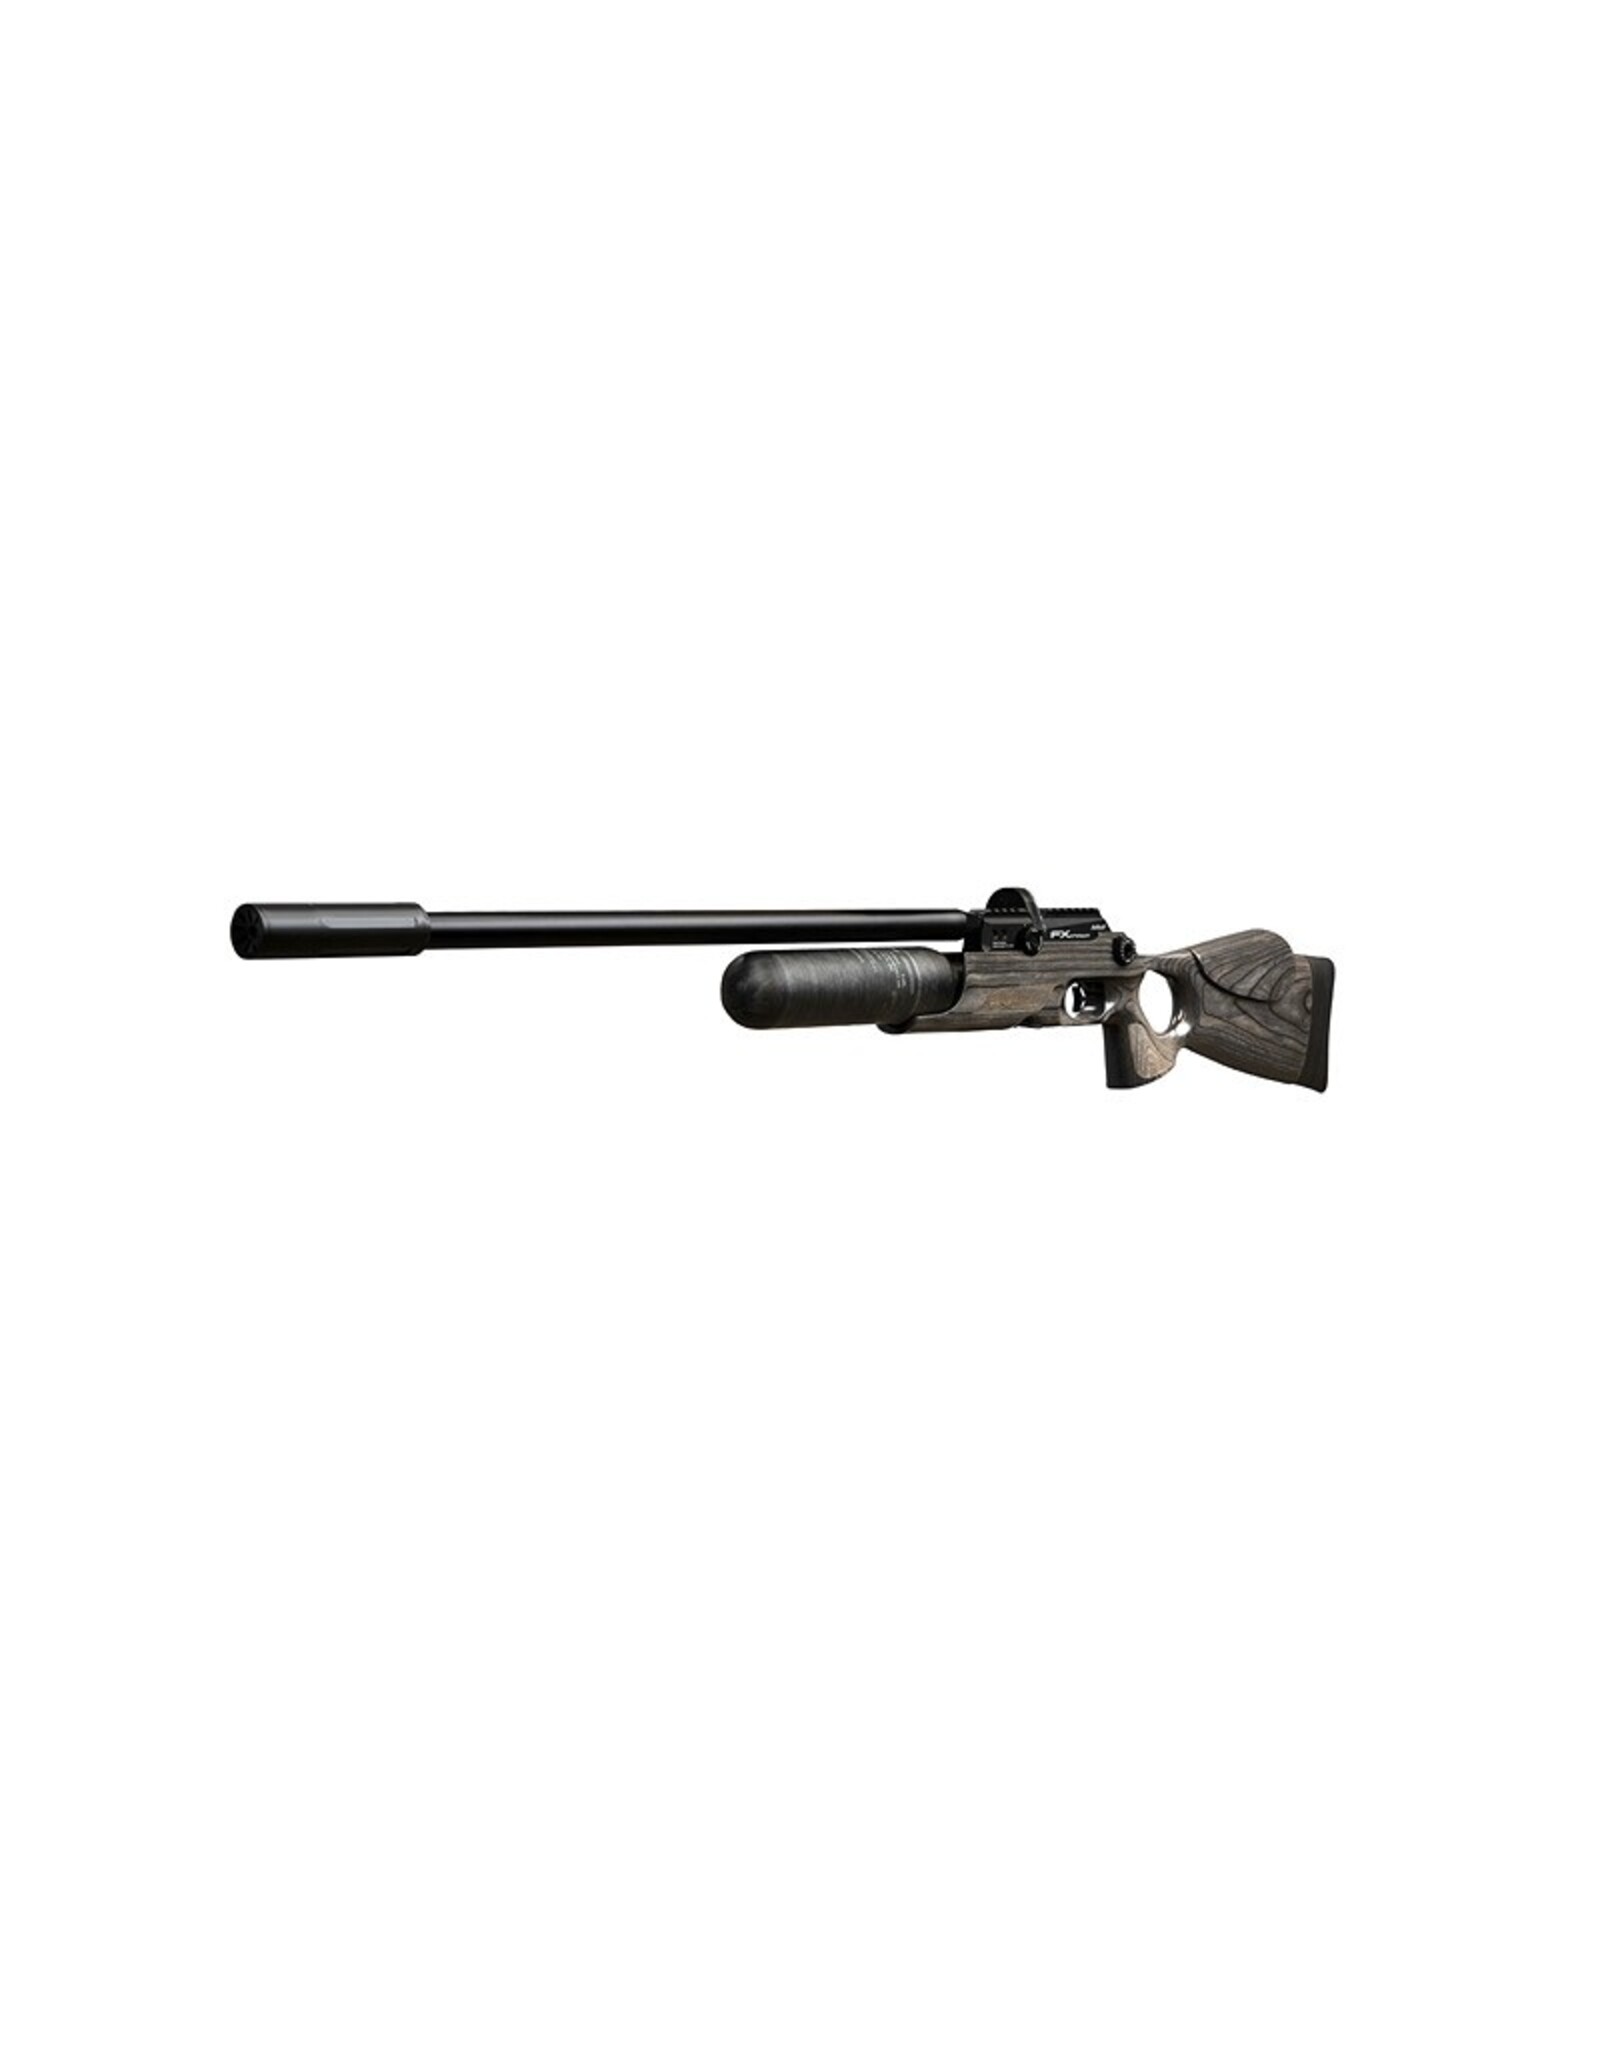 FX Airguns FX Crown MKII Standard Plus, Black Pepper Laminate  - 0.22 caliber